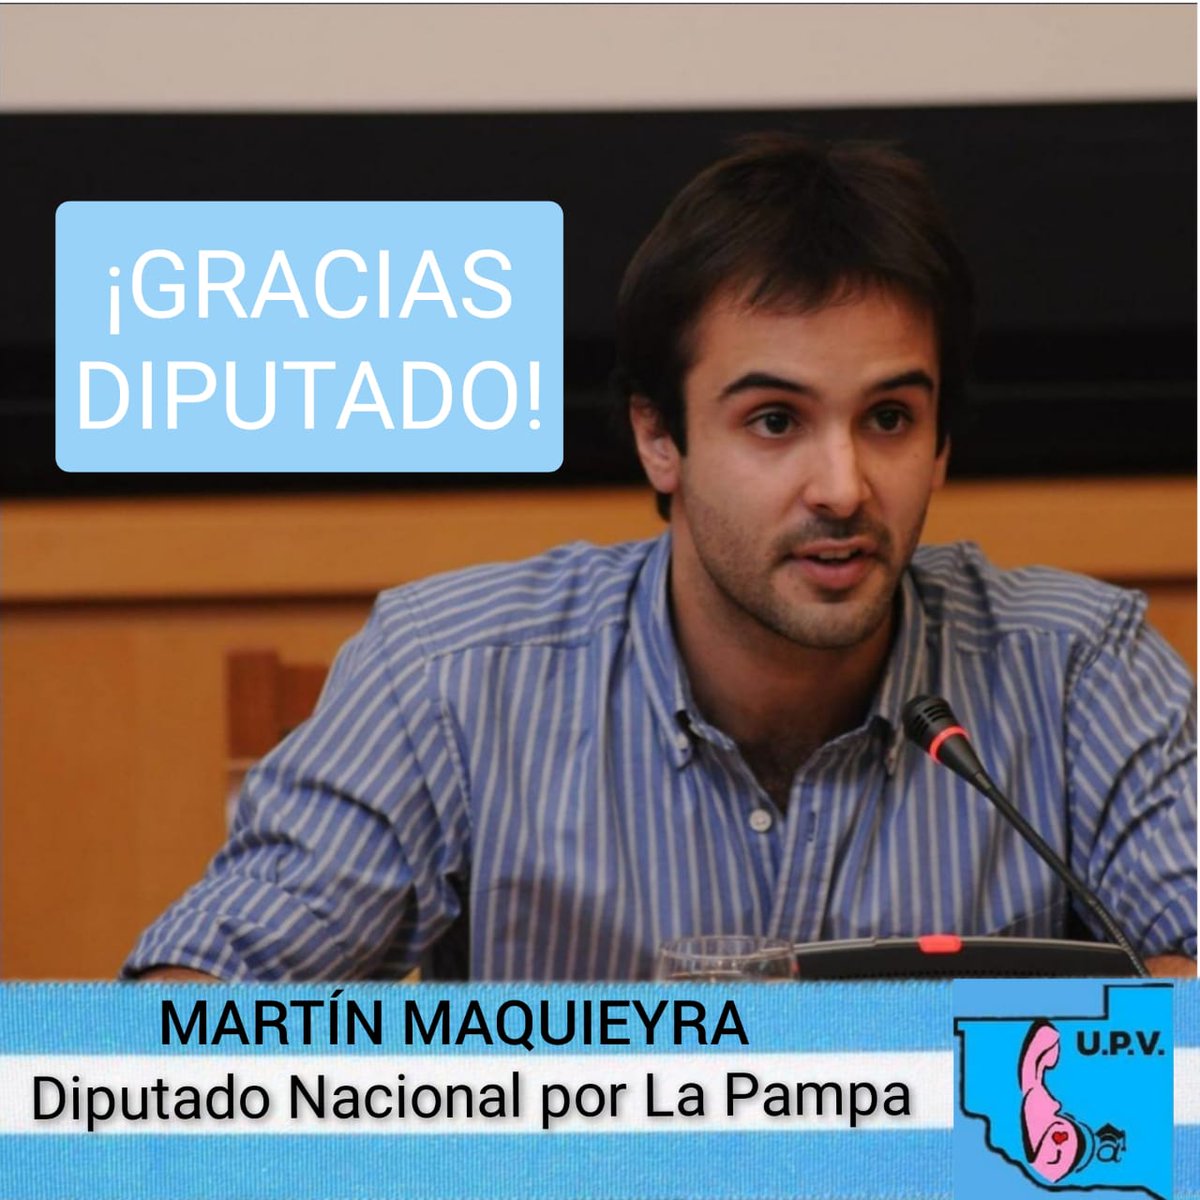 GRACIAS Martín Maquieyra POR DEFENDER LA VIDA DESDE LA CONCEPCIÓN 💙
#ValeTodaVida
#SalvemosLas2Vidas
#LaMayoriaCeleste